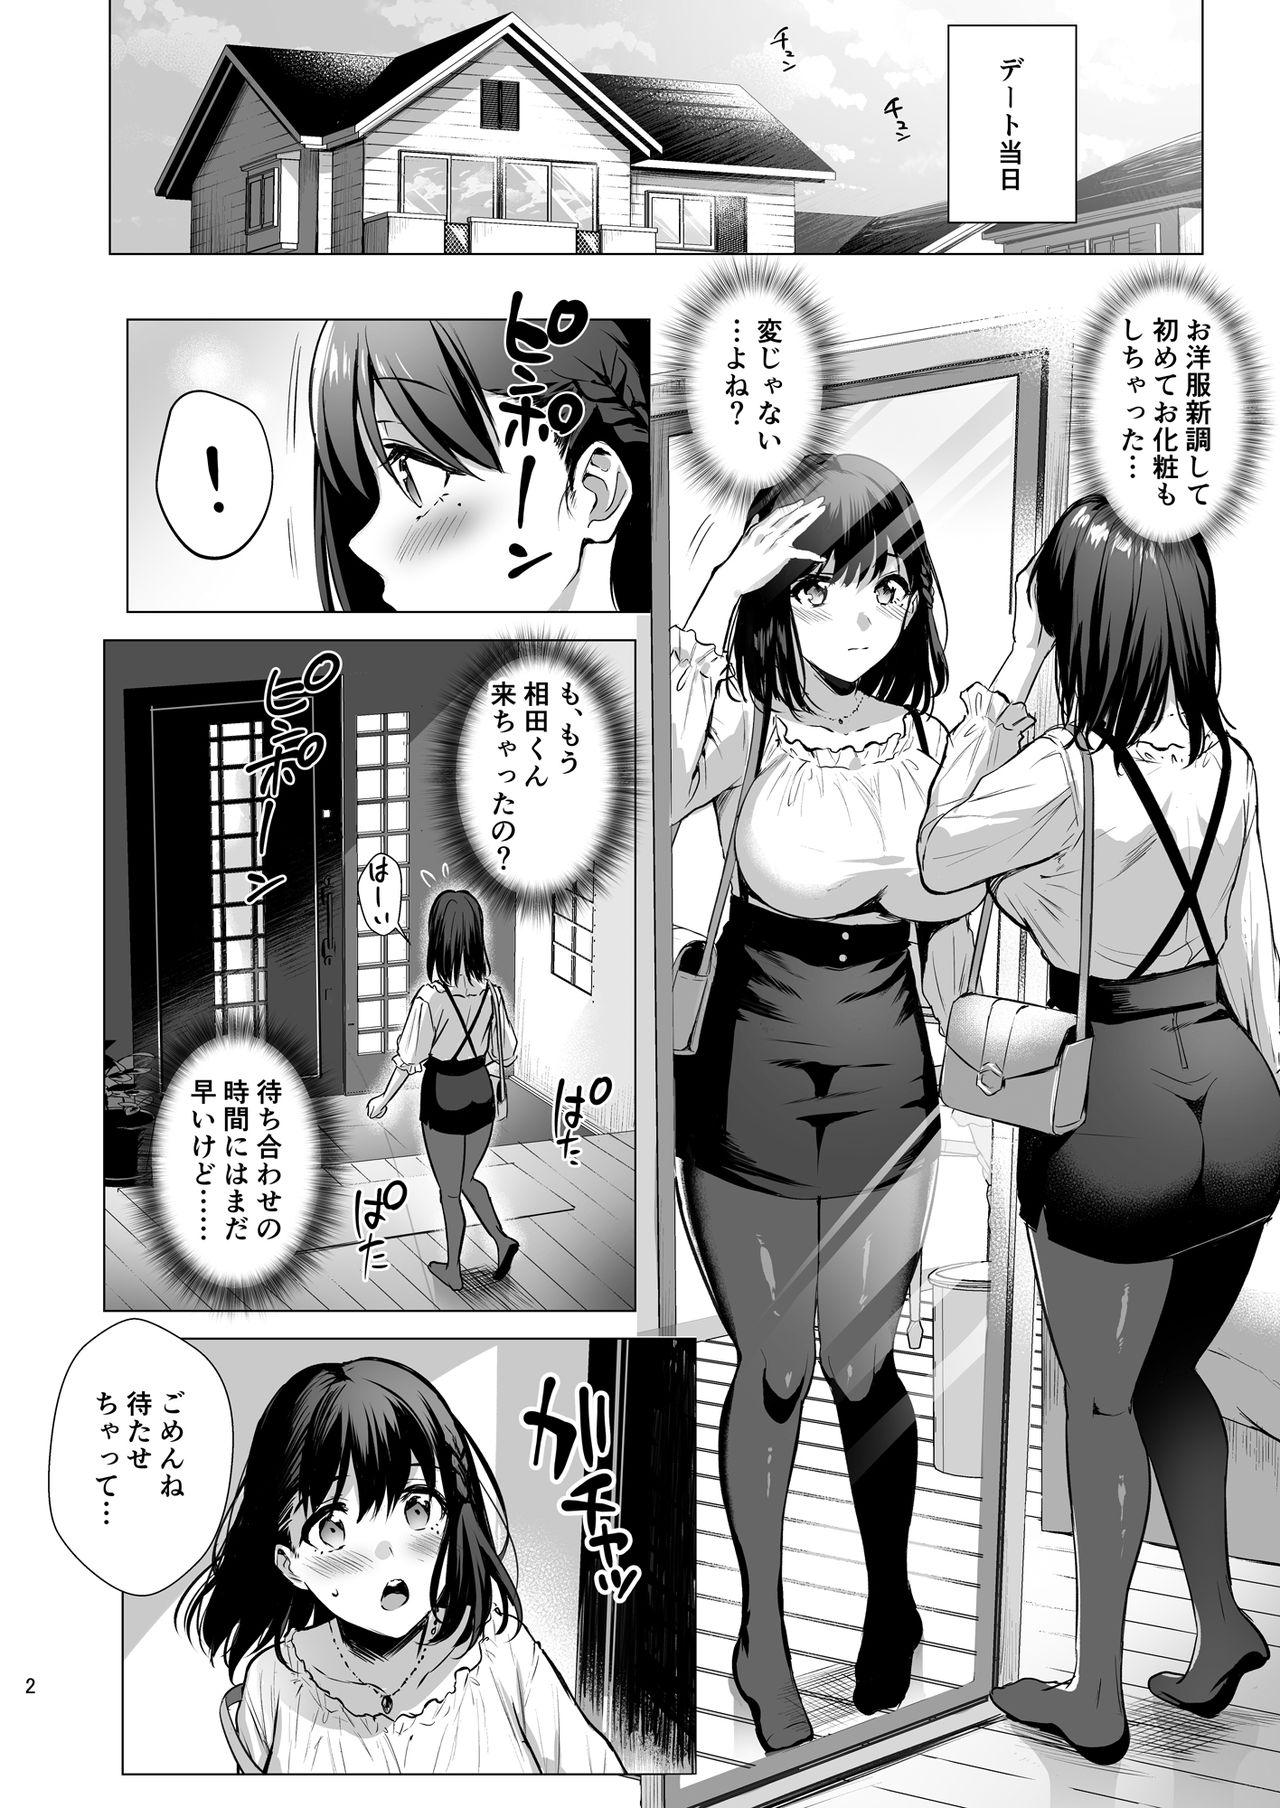 Petite Toshoshitsu no Kanojo 3 - Original Nudist - Page 3